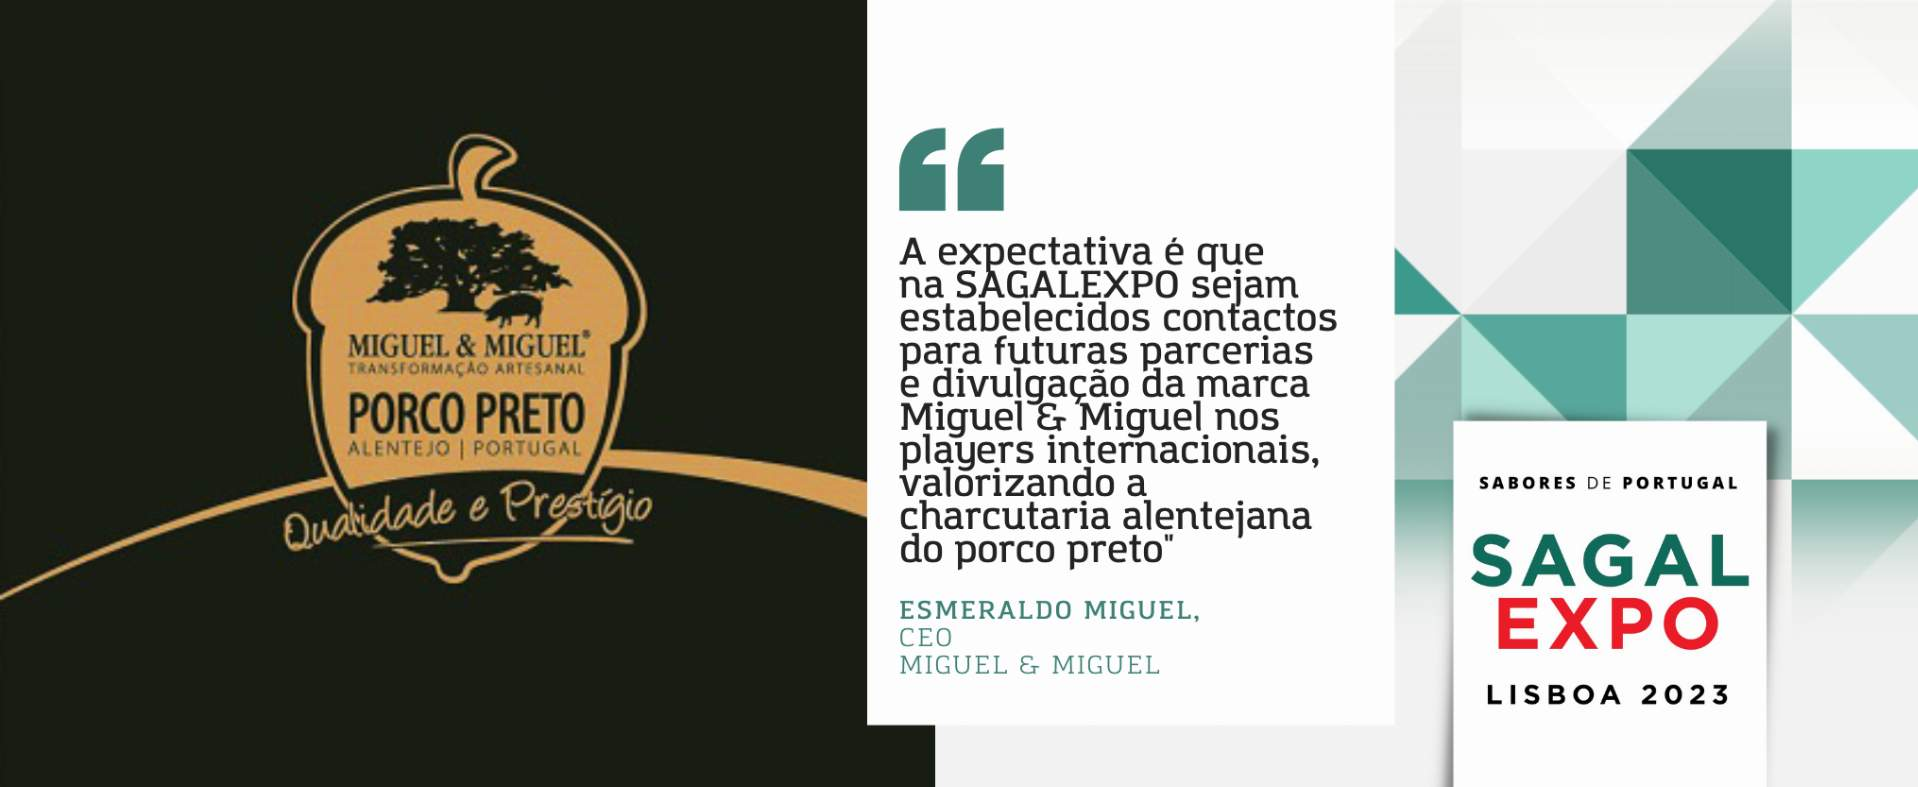 Miguel & Miguel: “A expectativa é que na SAGALEXPO sejam estabelecidos contactos para futuras parcerias e divulgação da nossa marca nos players internacionais, valorizando a charcutaria alentejana do porco preto"